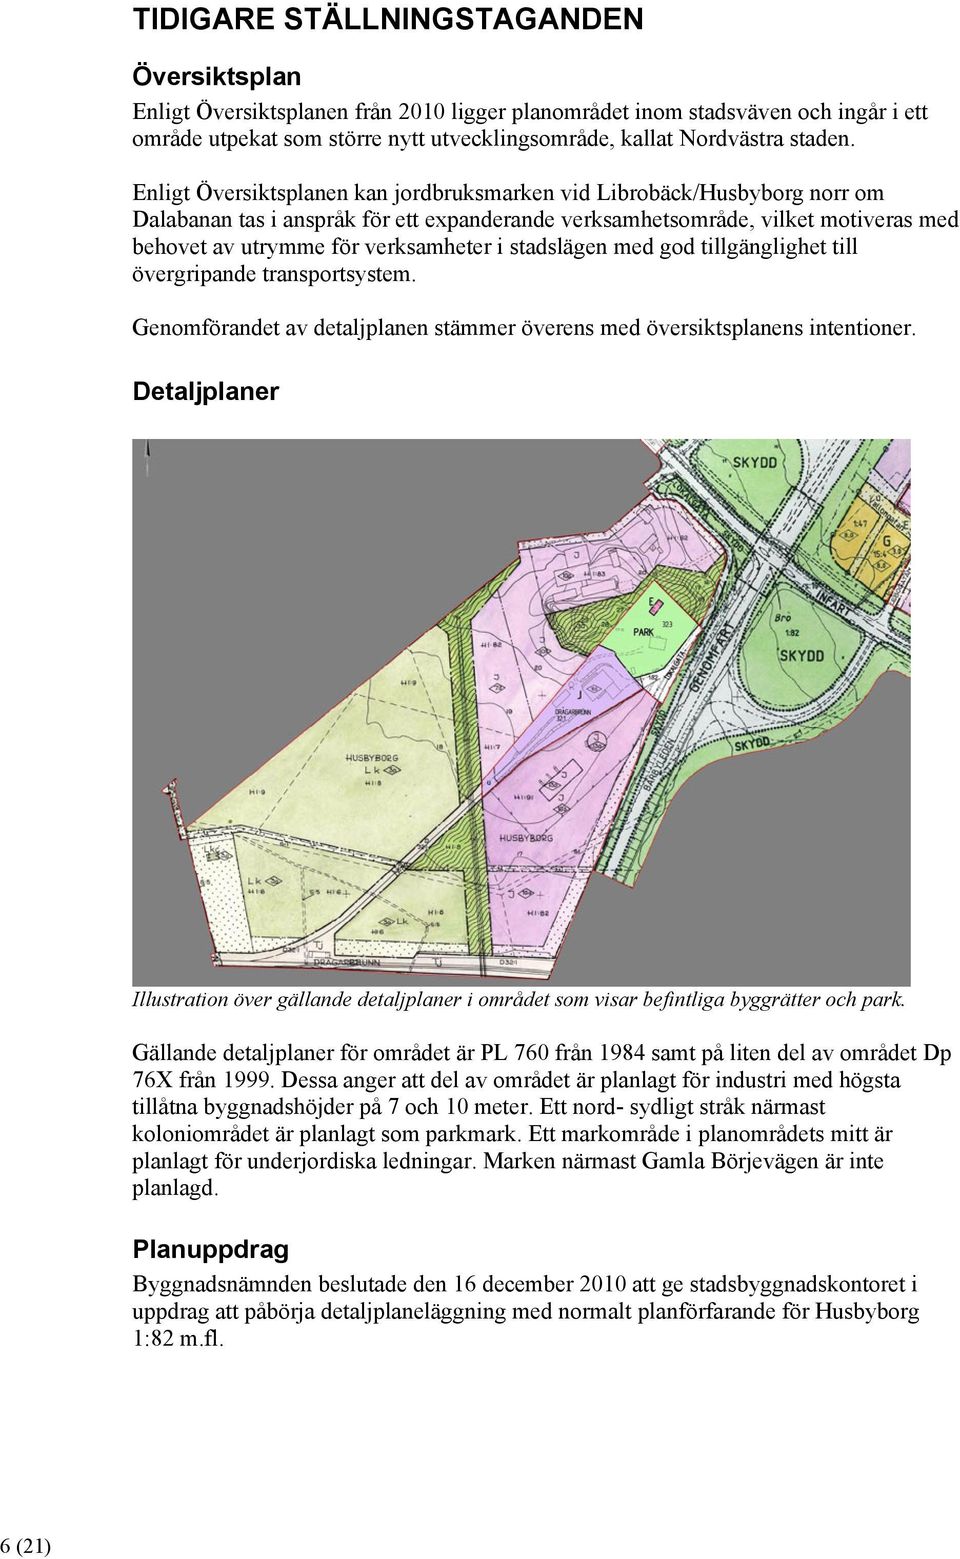 Enligt Översiktsplanen kan jordbruksmarken vid Librobäck/Husbyborg norr om Dalabanan tas i anspråk för ett expanderande verksamhetsområde, vilket motiveras med behovet av utrymme för verksamheter i